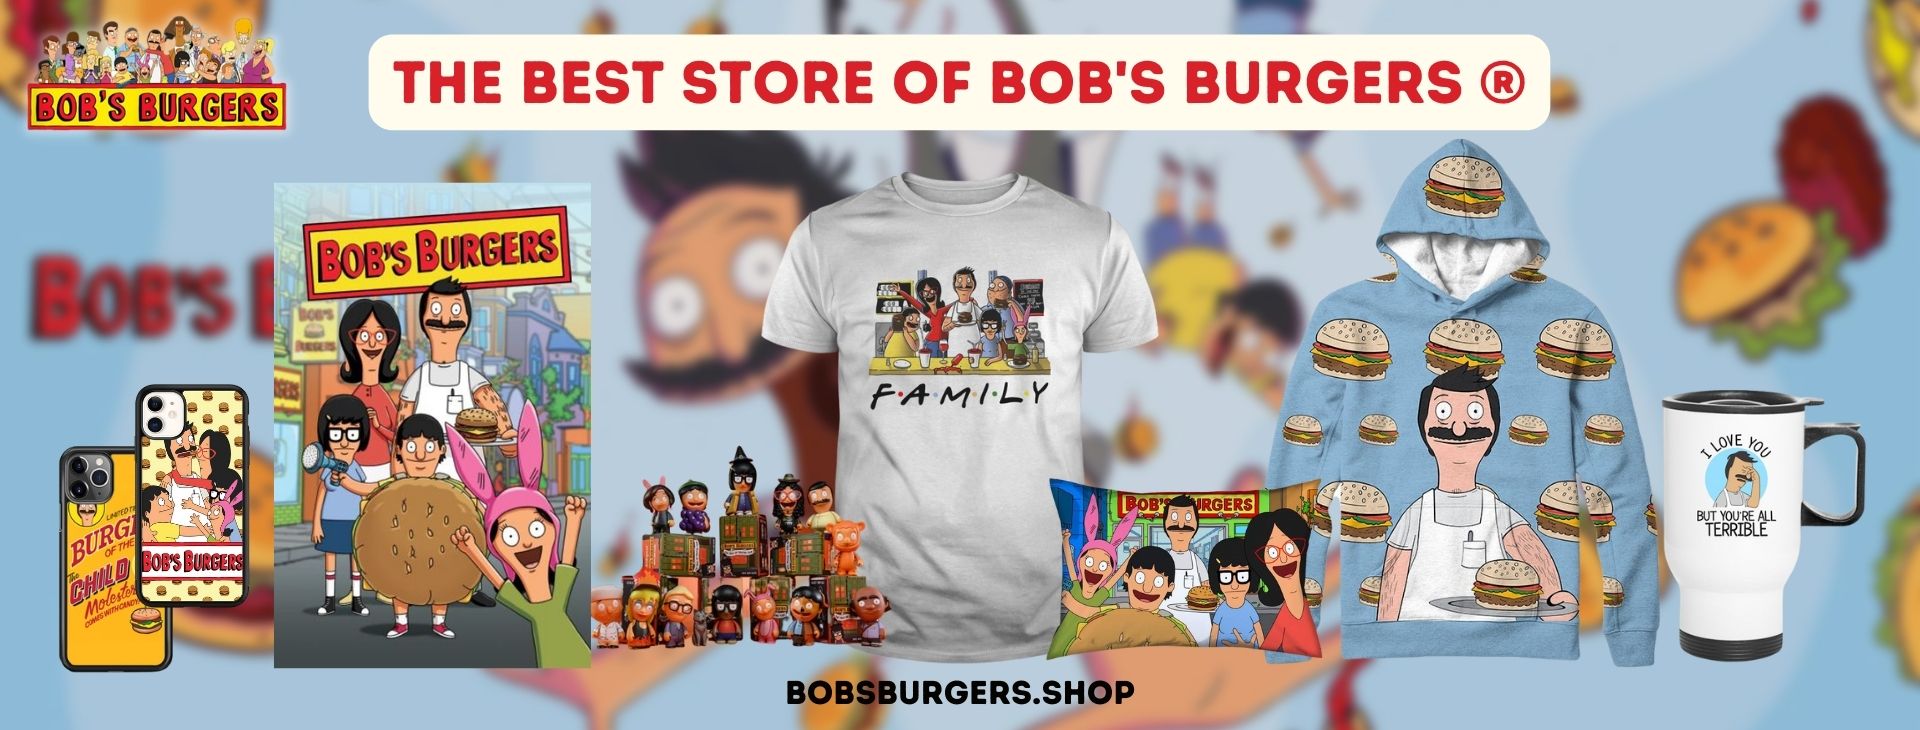 Bobs Burgers Shop Banner - Bob's Burgers Shop